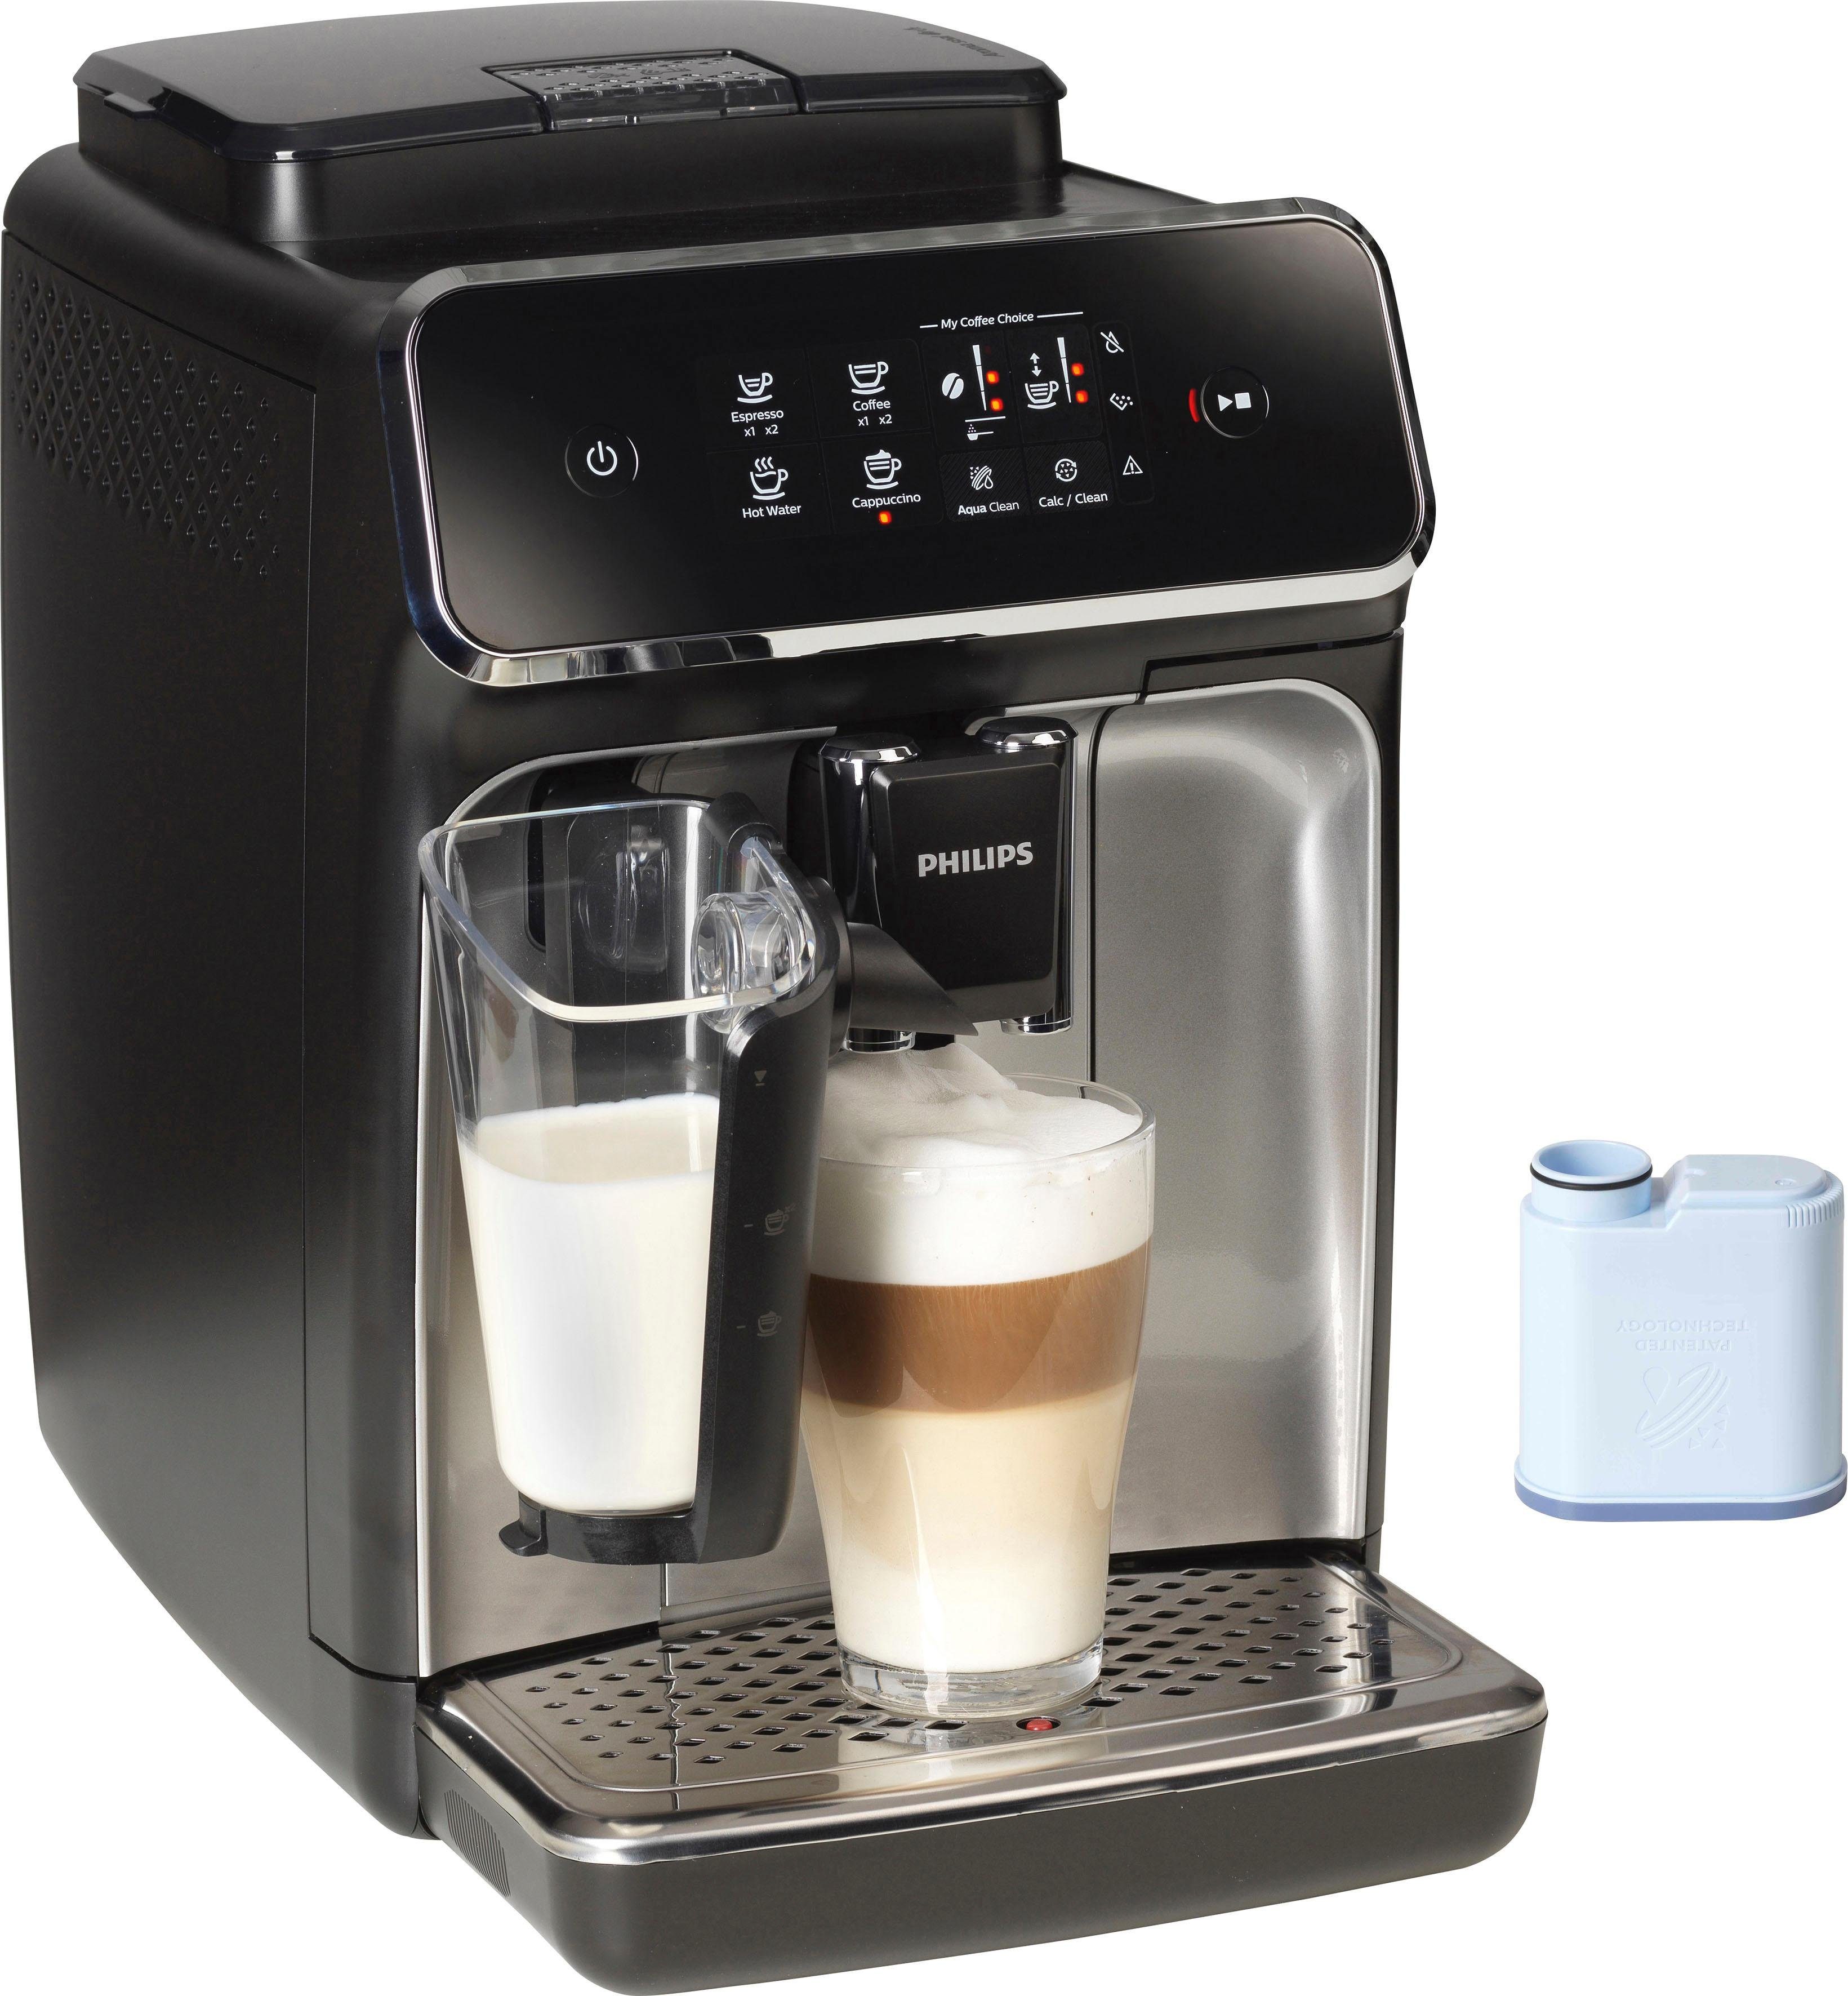 Günstige Kaffeemaschinen kaufen » Kaffeemaschinen SALE | OTTO